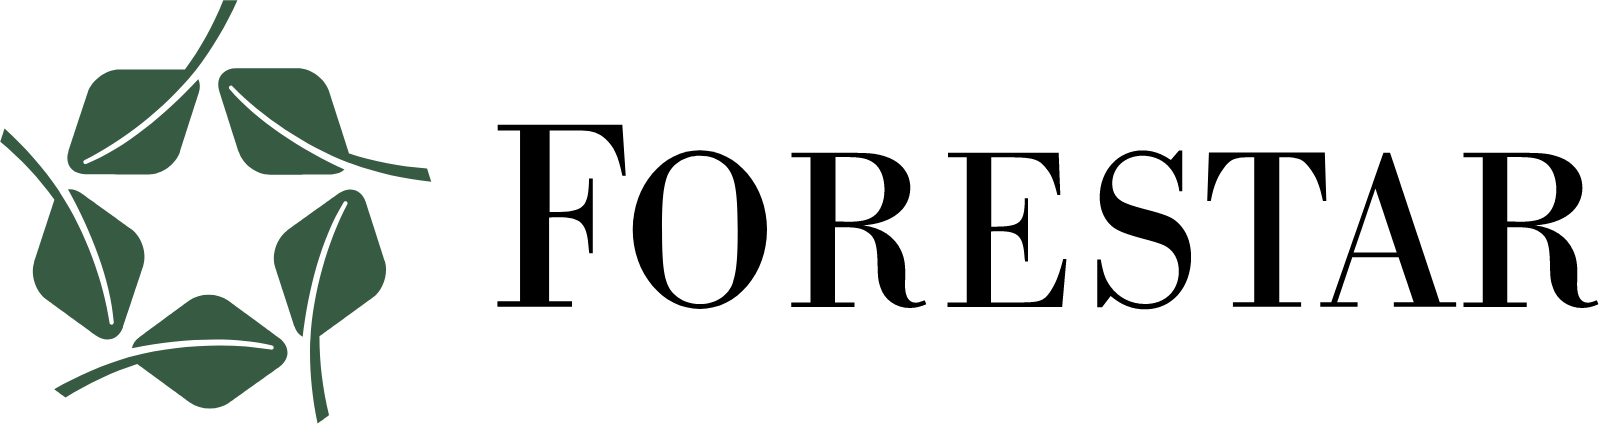 Forestar Group
 logo large (transparent PNG)